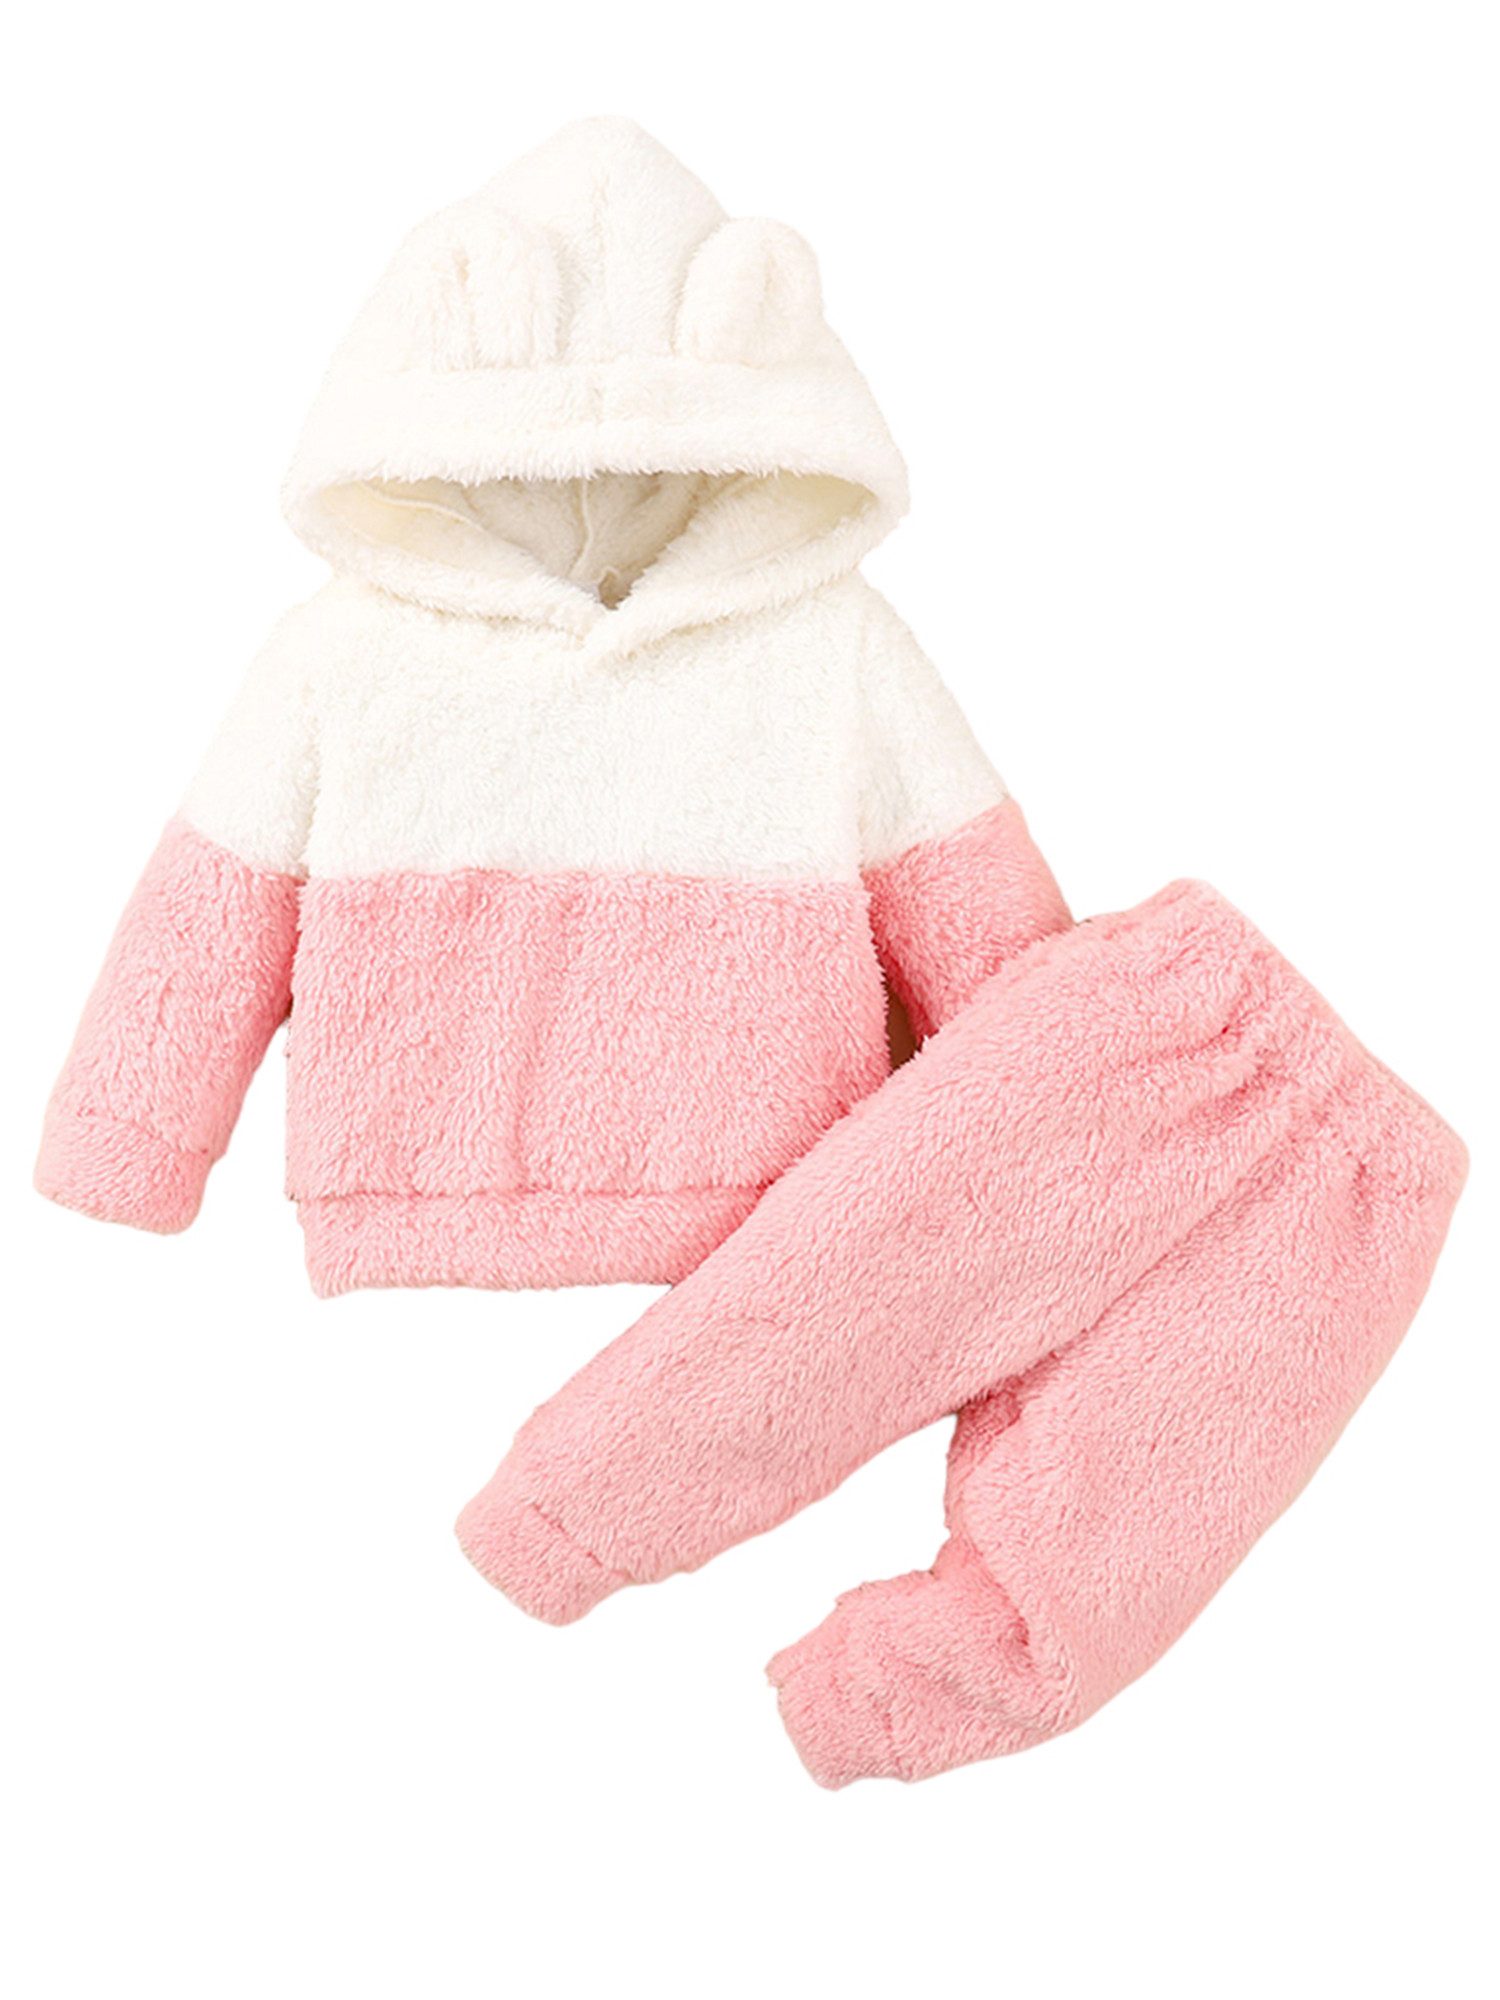 LAPA Hausanzug Babys Warmer Kapuzenpullover & Hose in Kontrastfarbe für Herbst Winter (Set, 2-tlg) Weiches Plüschset, das als Pyjama und Loungewear verwendet werden kann